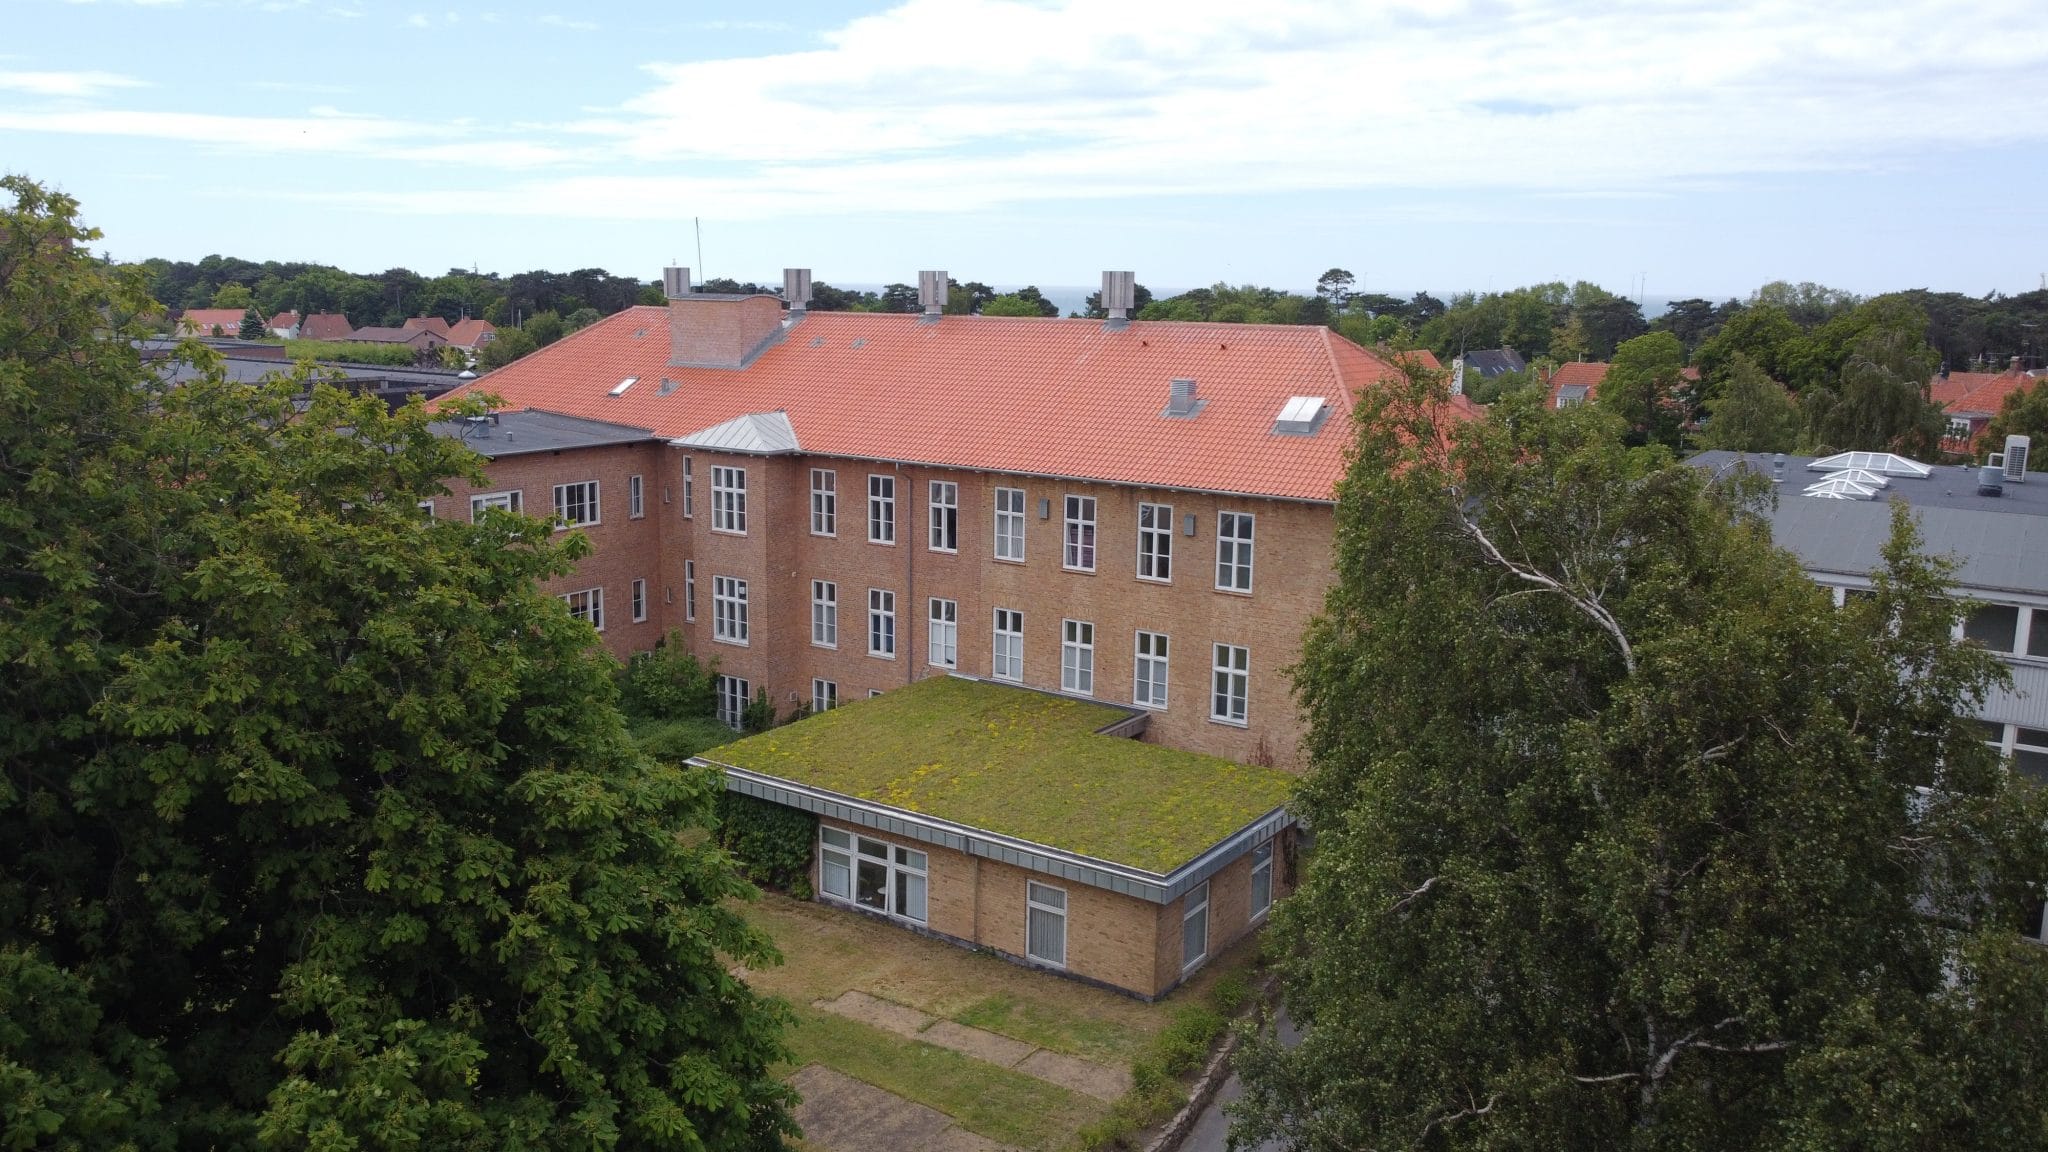 Bornholms hospital - Grøn gård